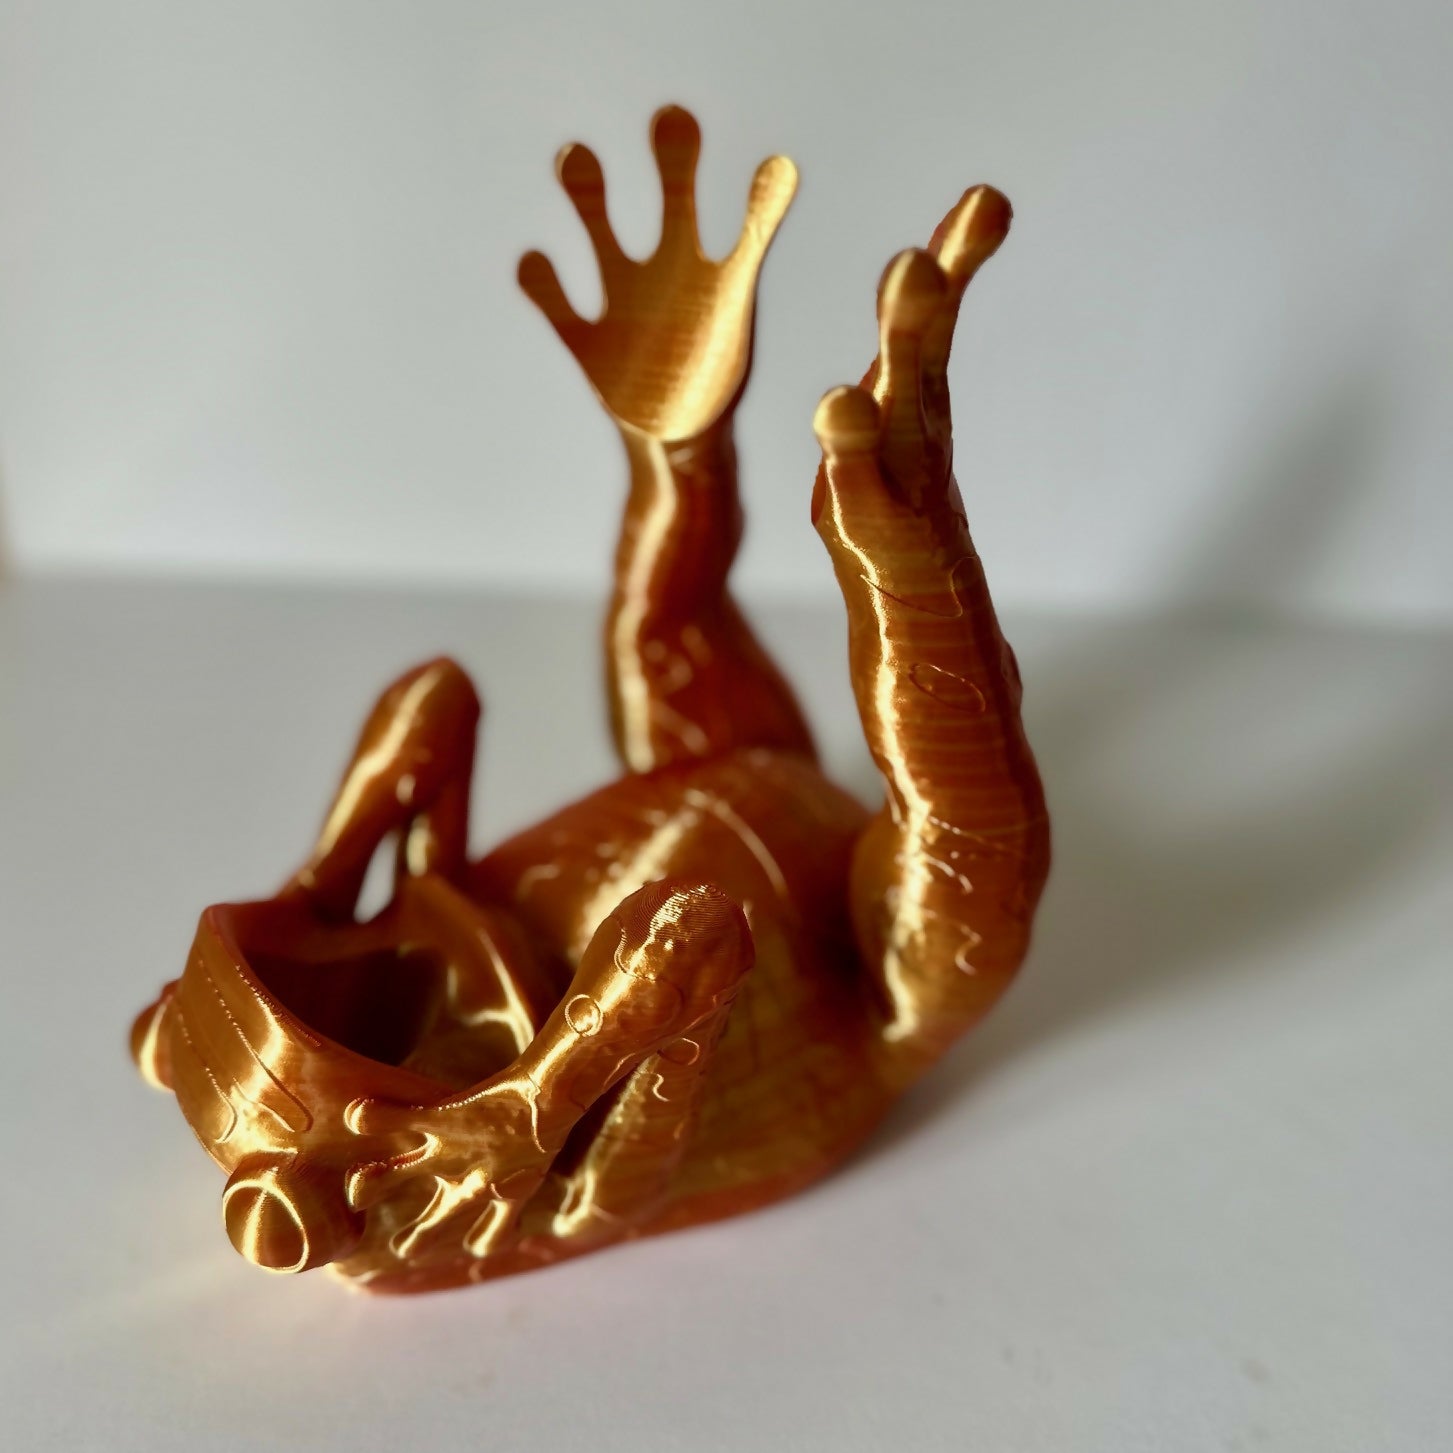 Maple Works Designs | 3D Printed Frog Bottle Holder